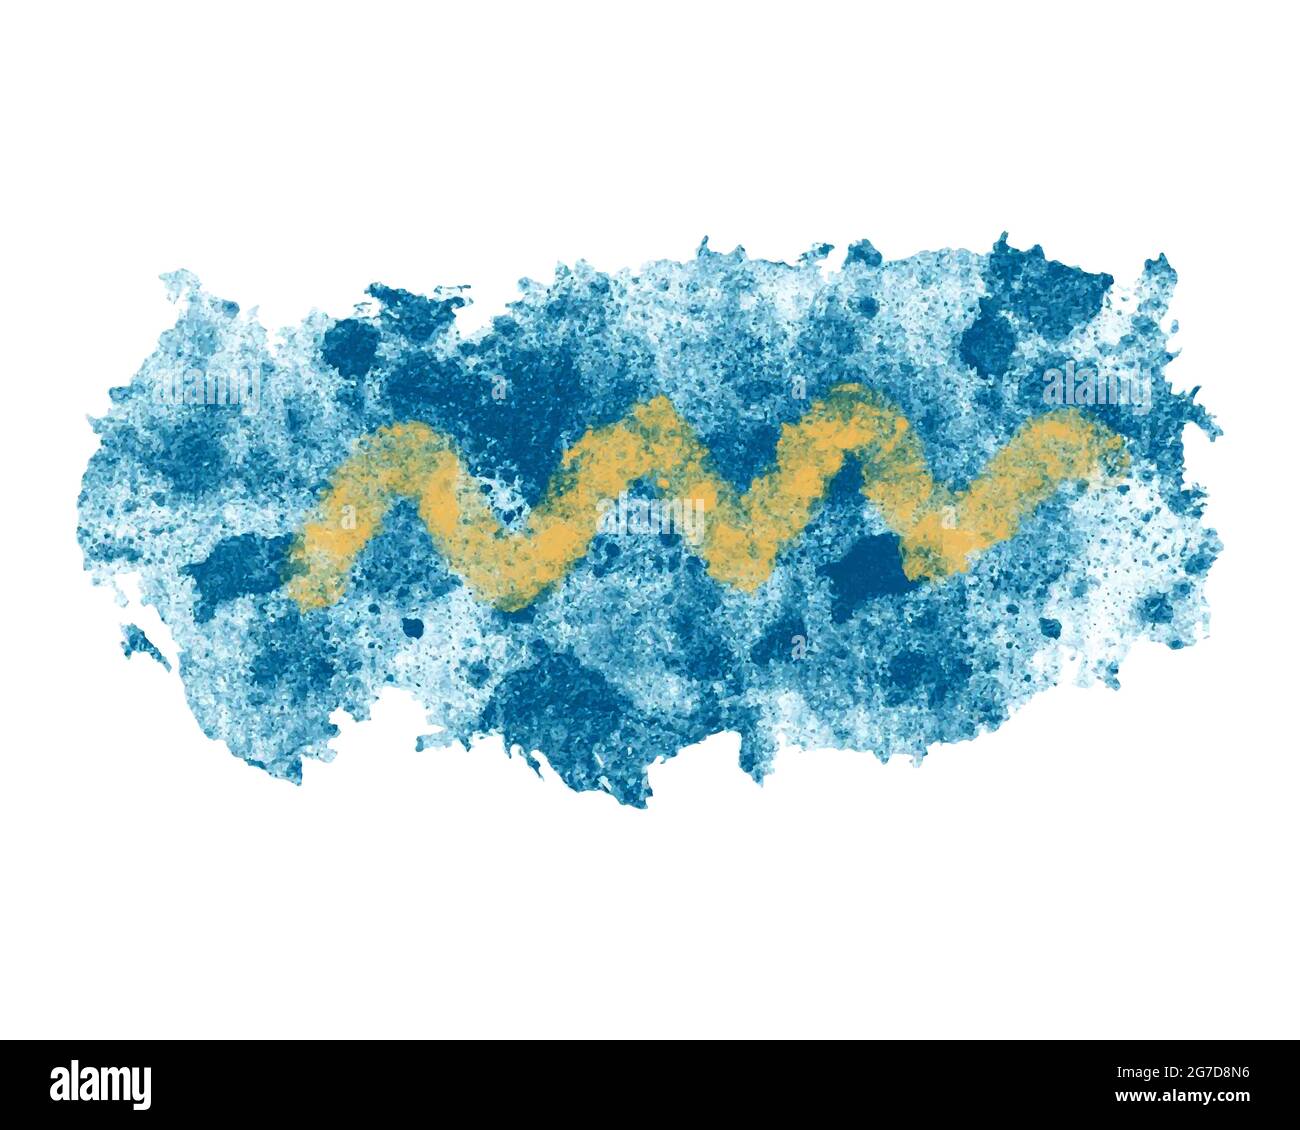 Vektor Aquarell Illustration von blauem Punkt mit gelben Zickzack, marine Hintergrund, Hintergrund, Banner. Vektorgrafik Stock Vektor